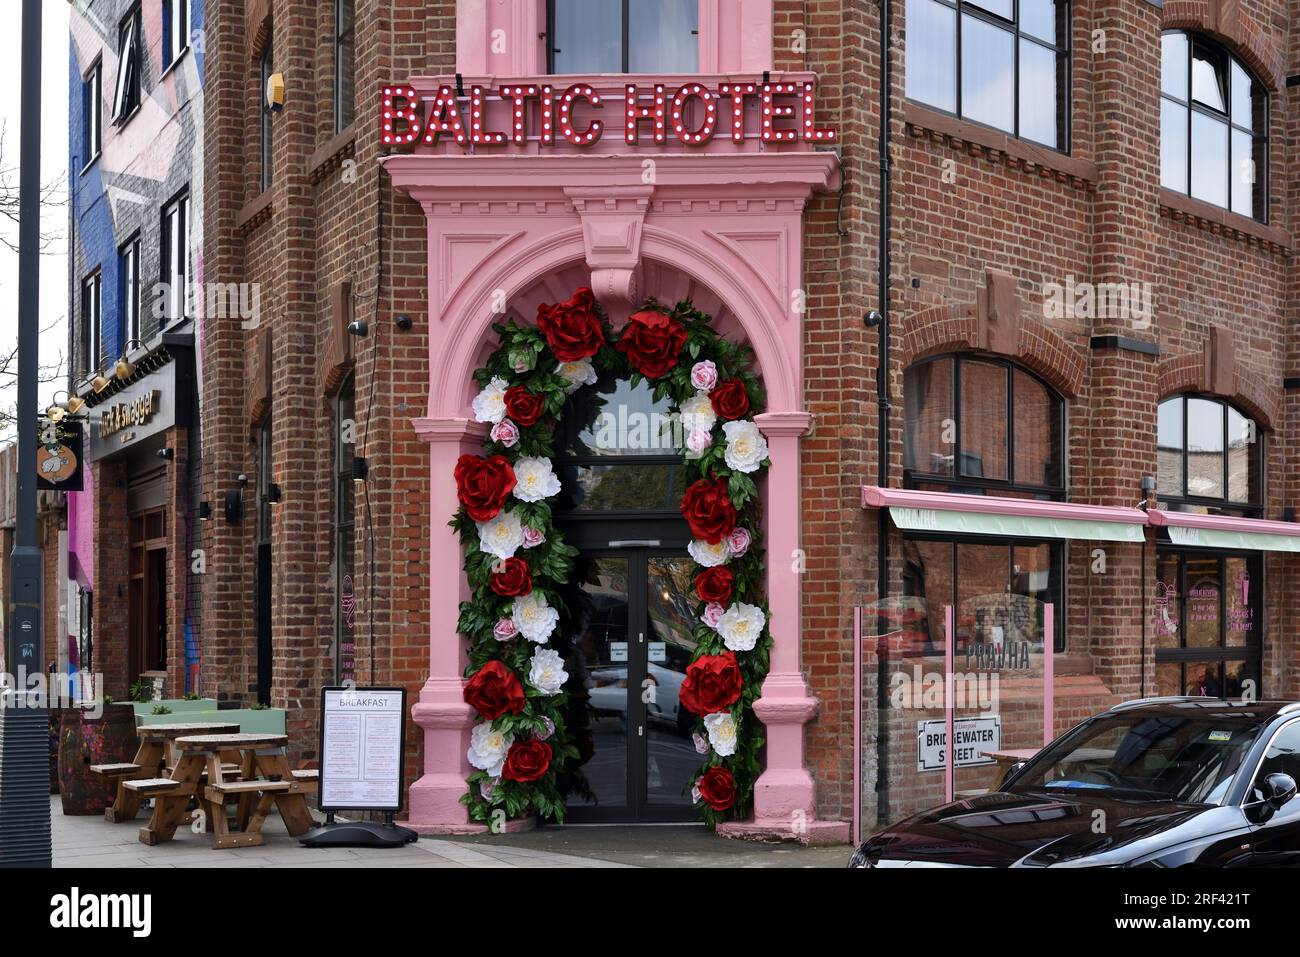 Kitsch Rose porte d'entrée et fleurs artificielles décoratives ou en plastique de l'Hôtel Baltic dans la région du Triangle Baltique de Liverpool Angleterre Royaume-Uni Banque D'Images